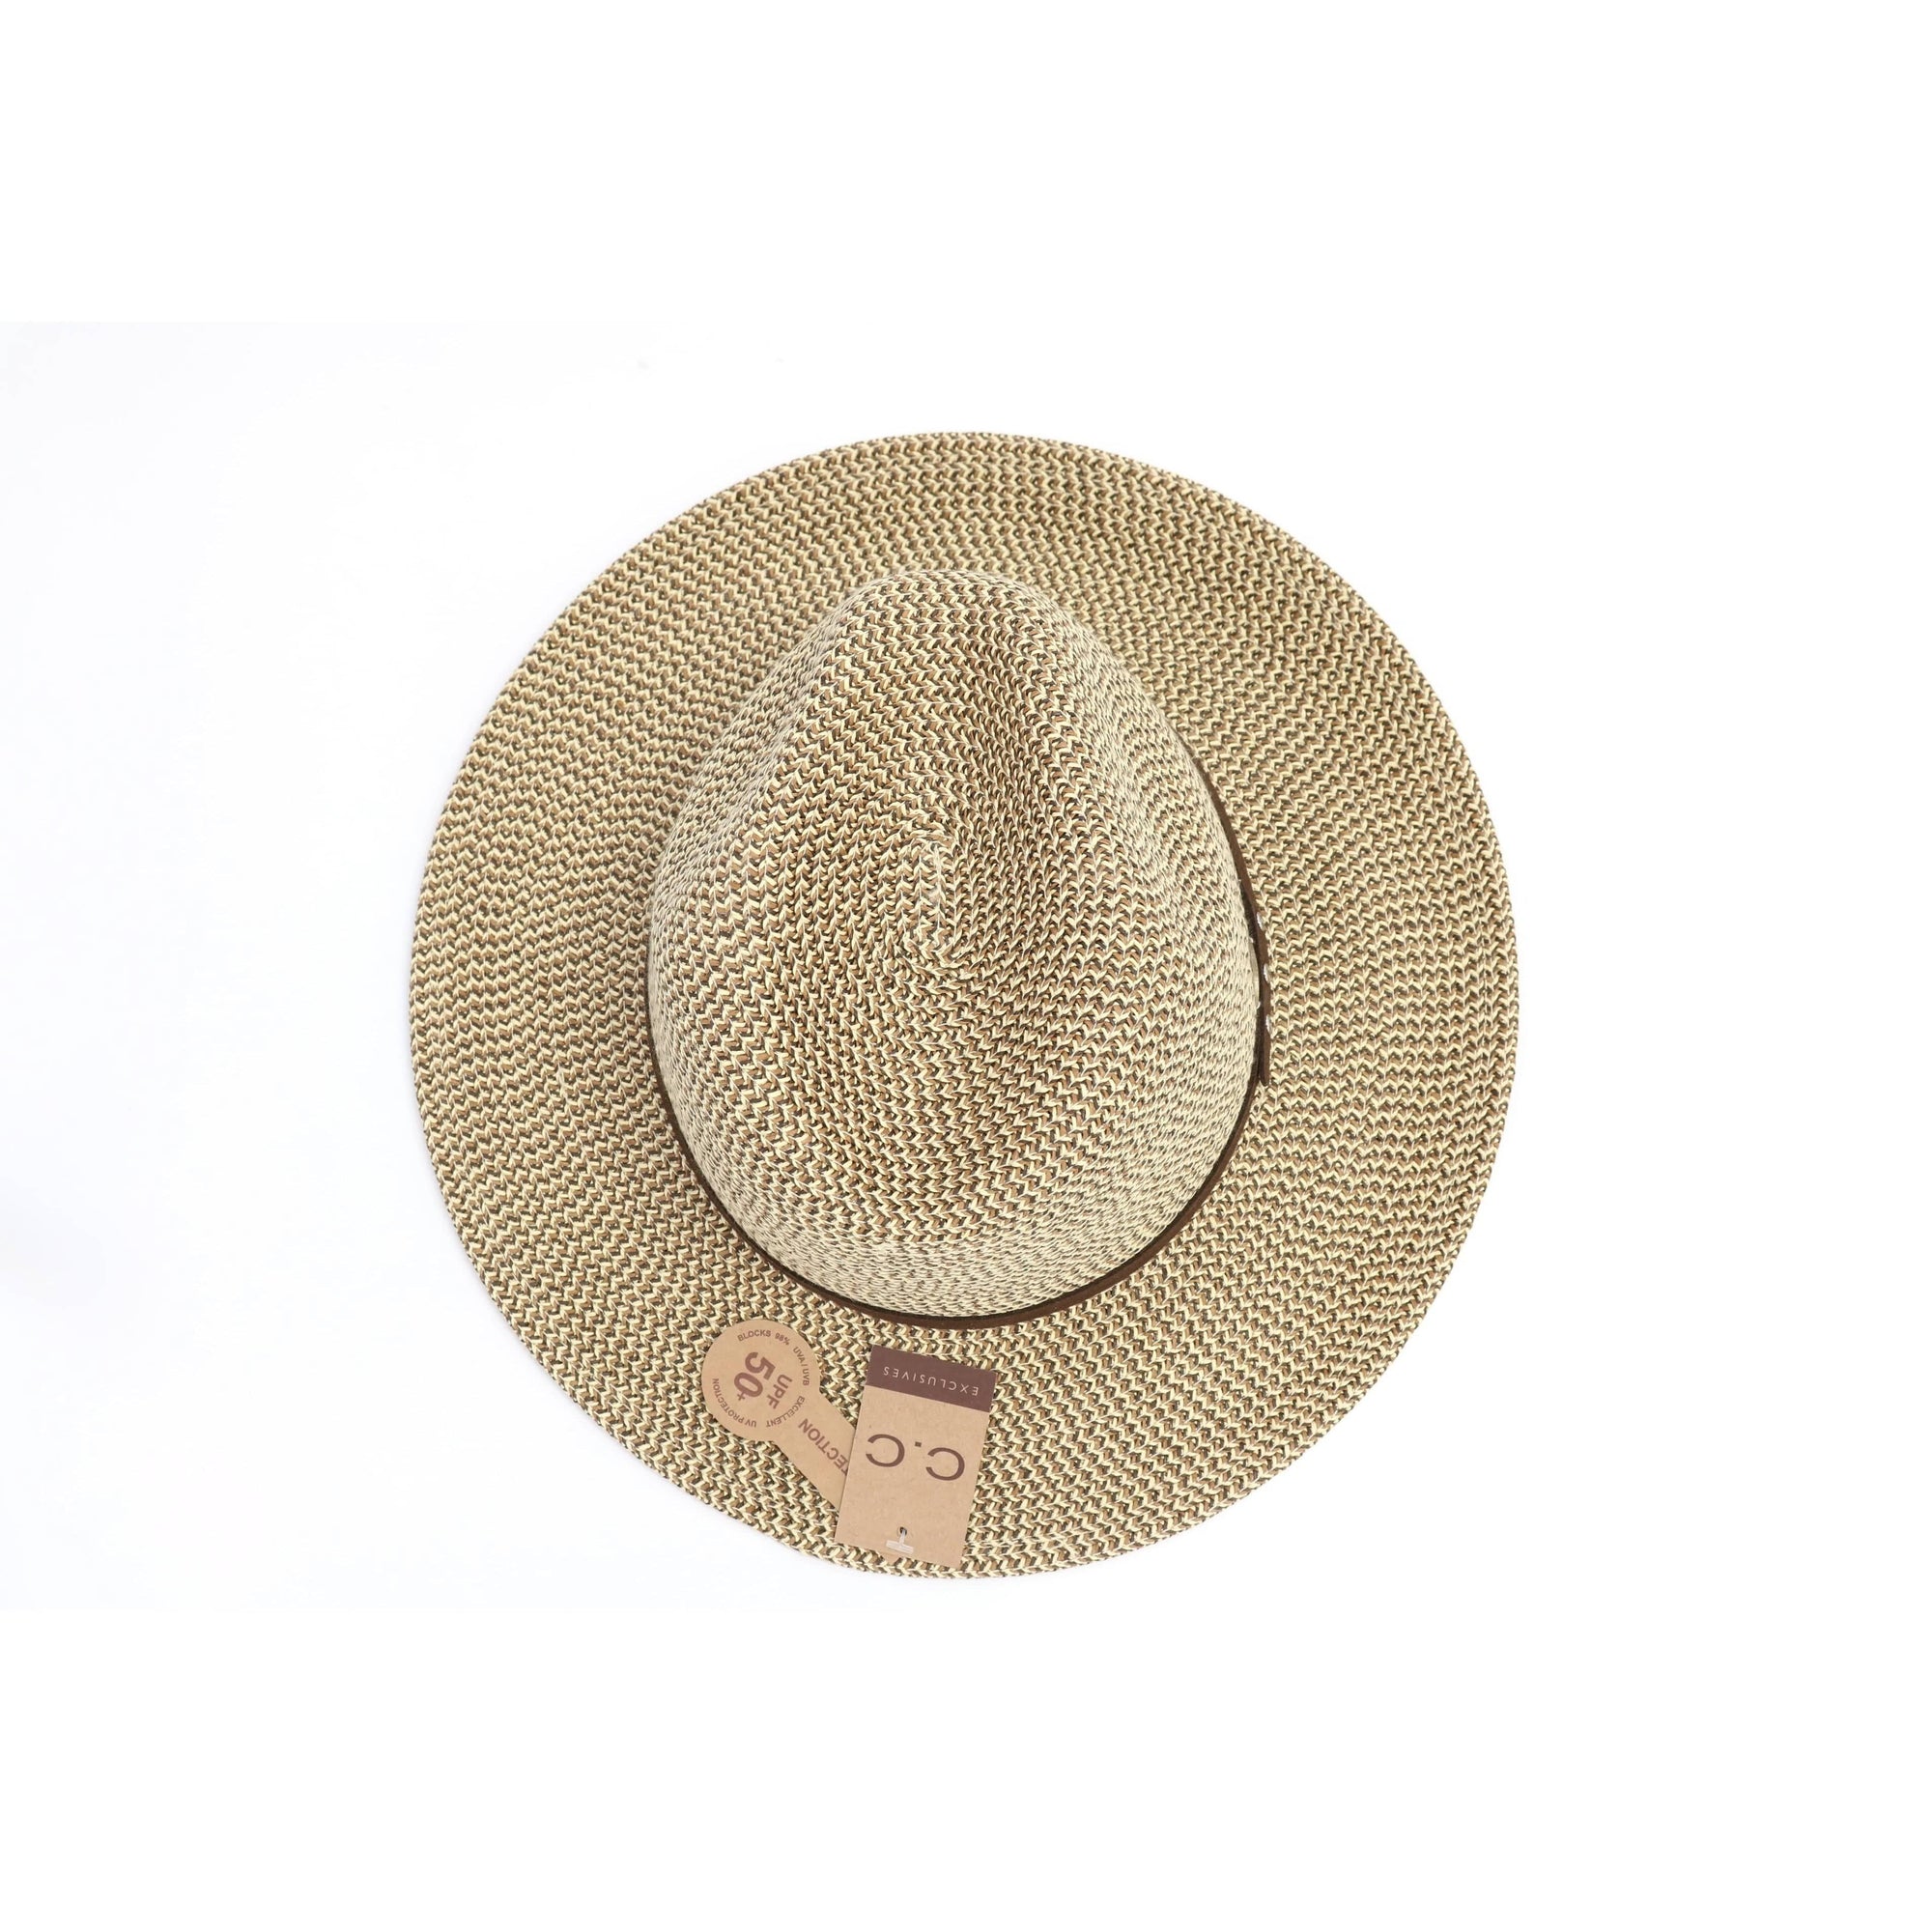 CC Beanies BROWN CC Beanie Straw Panama Hat